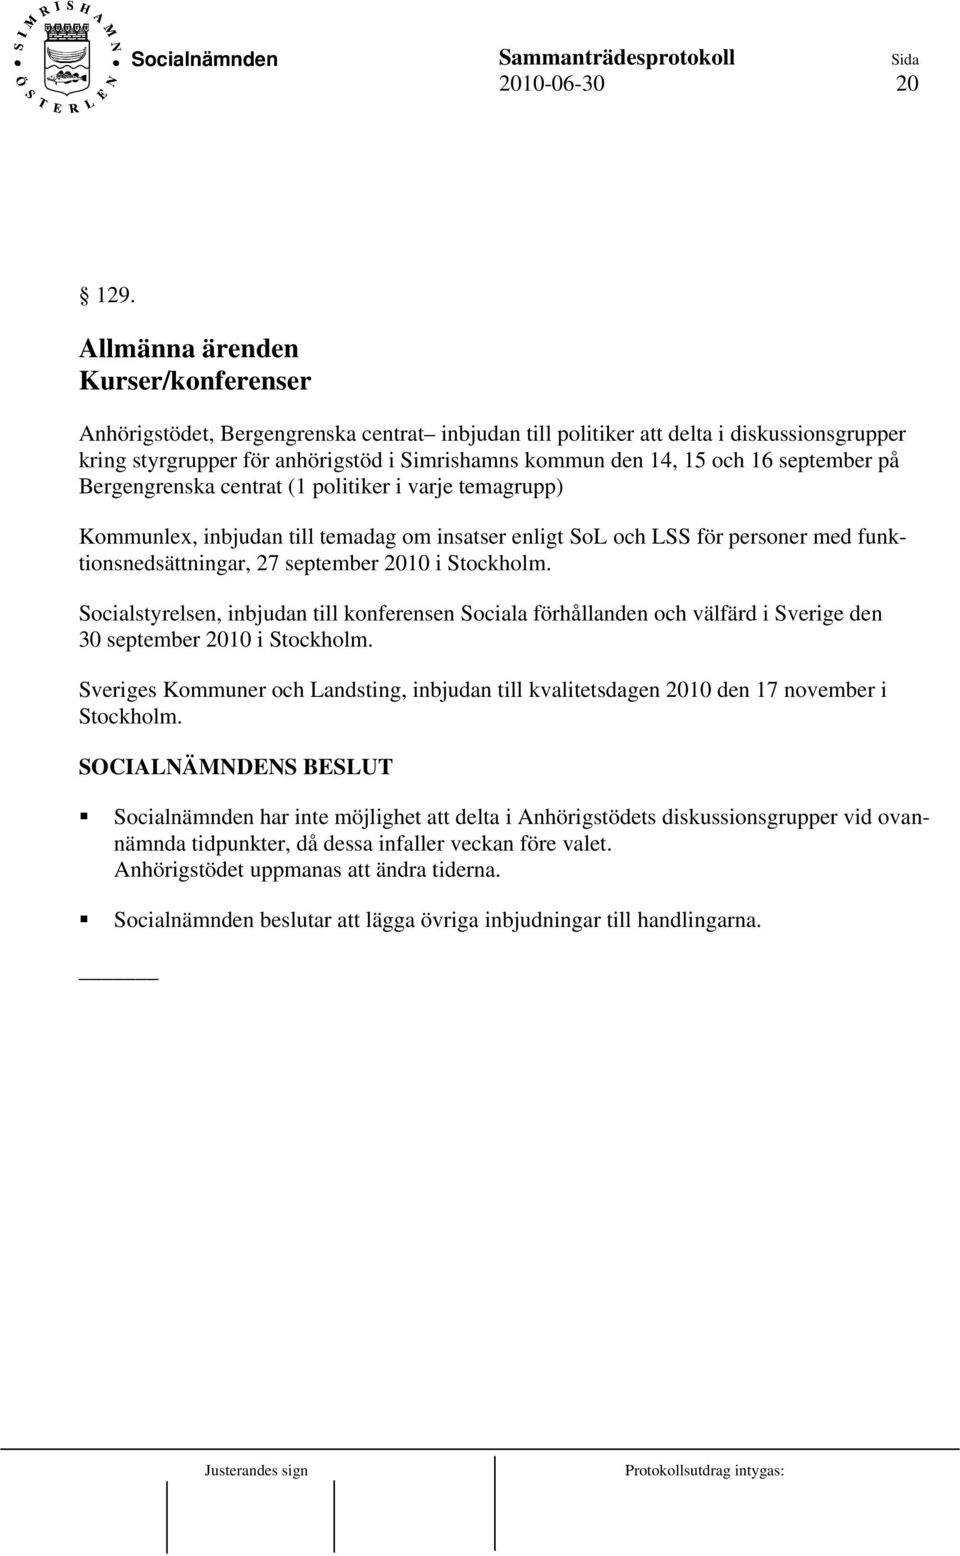 16 september på Bergengrenska centrat (1 politiker i varje temagrupp) Kommunlex, inbjudan till temadag om insatser enligt SoL och LSS för personer med funktionsnedsättningar, 27 september 2010 i